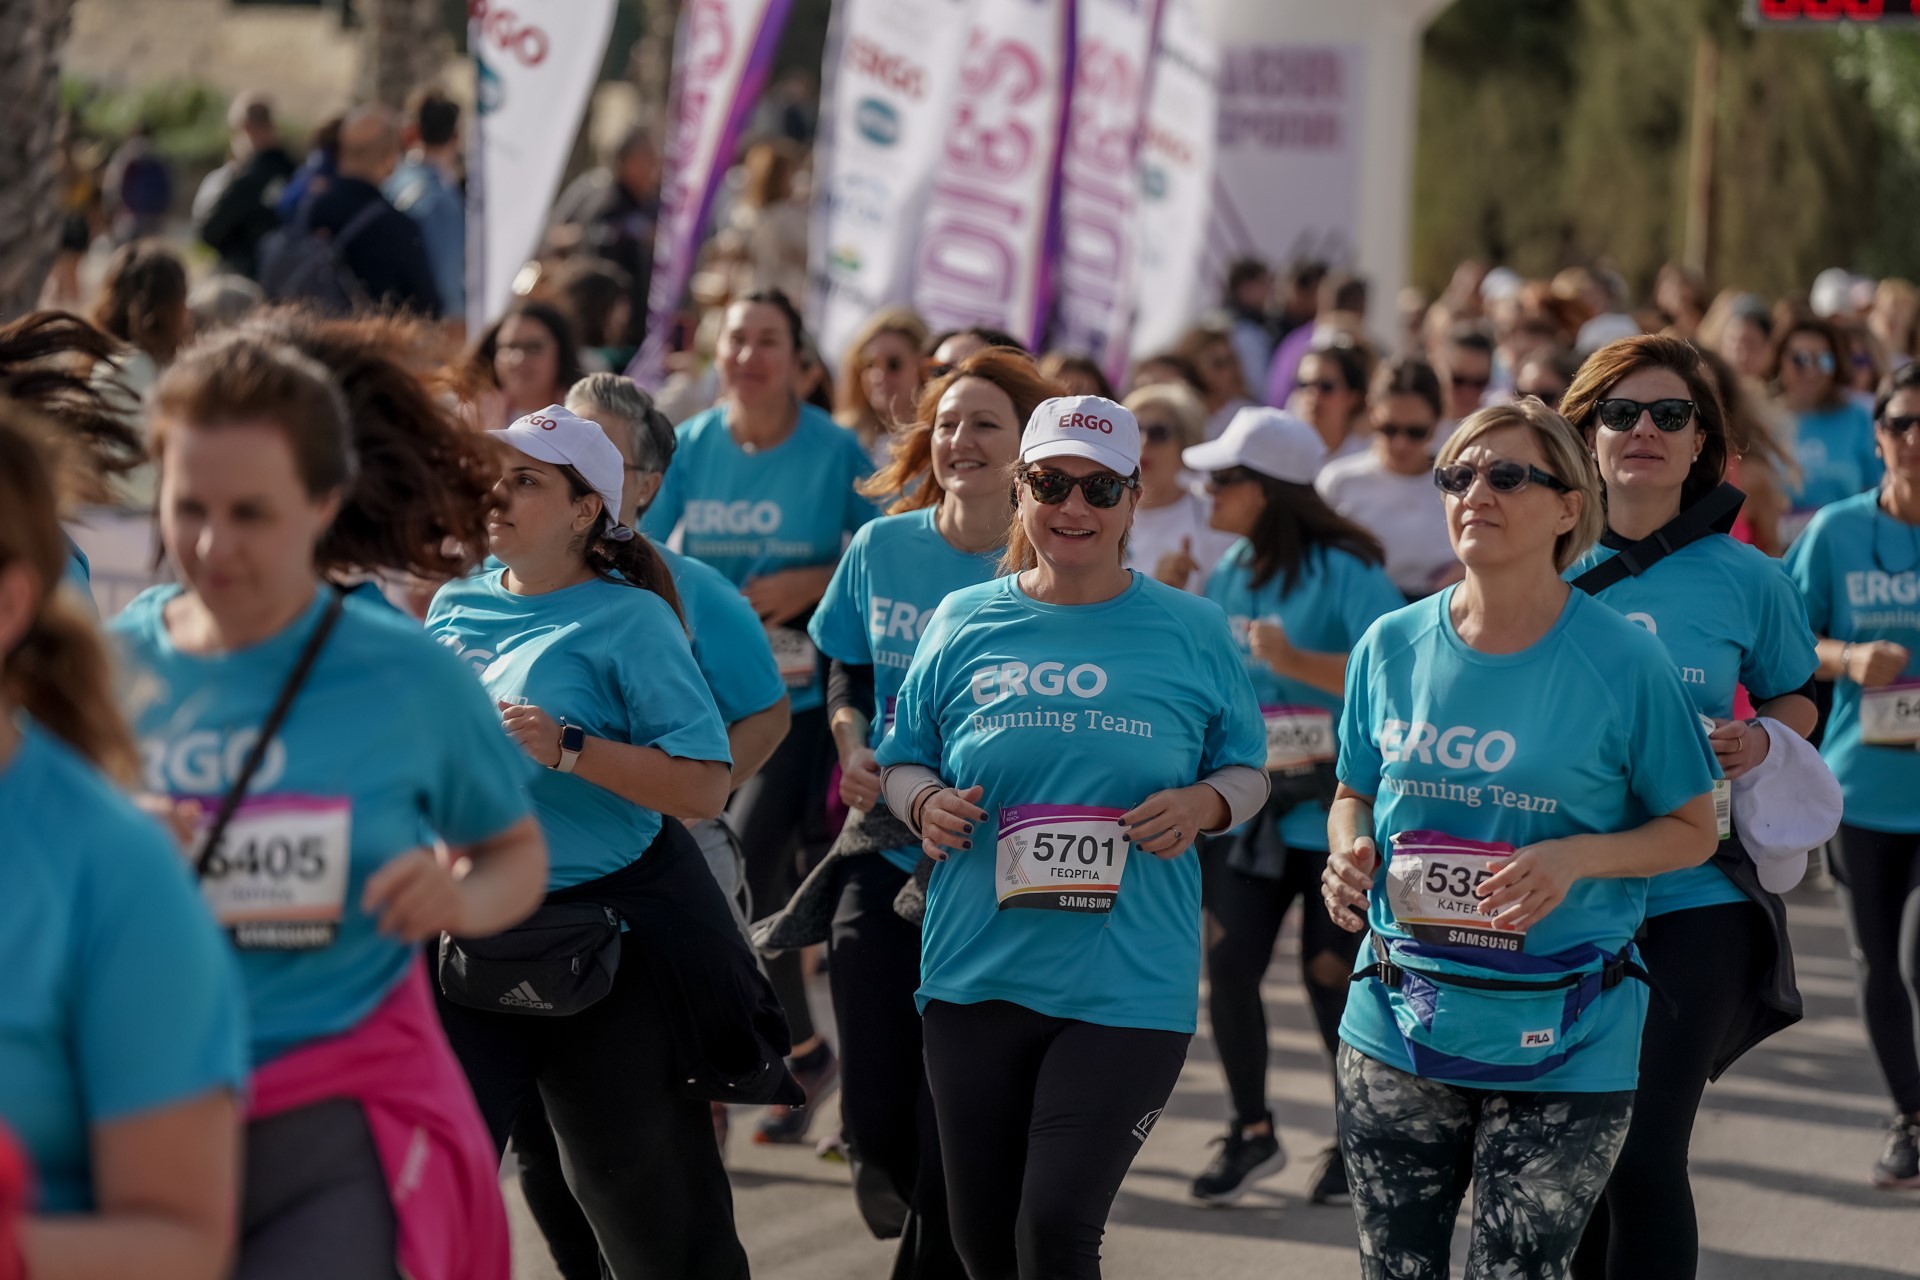 ERGO: Insurance Partner στον 10ο επετειακό αγώνα του Ladies Run